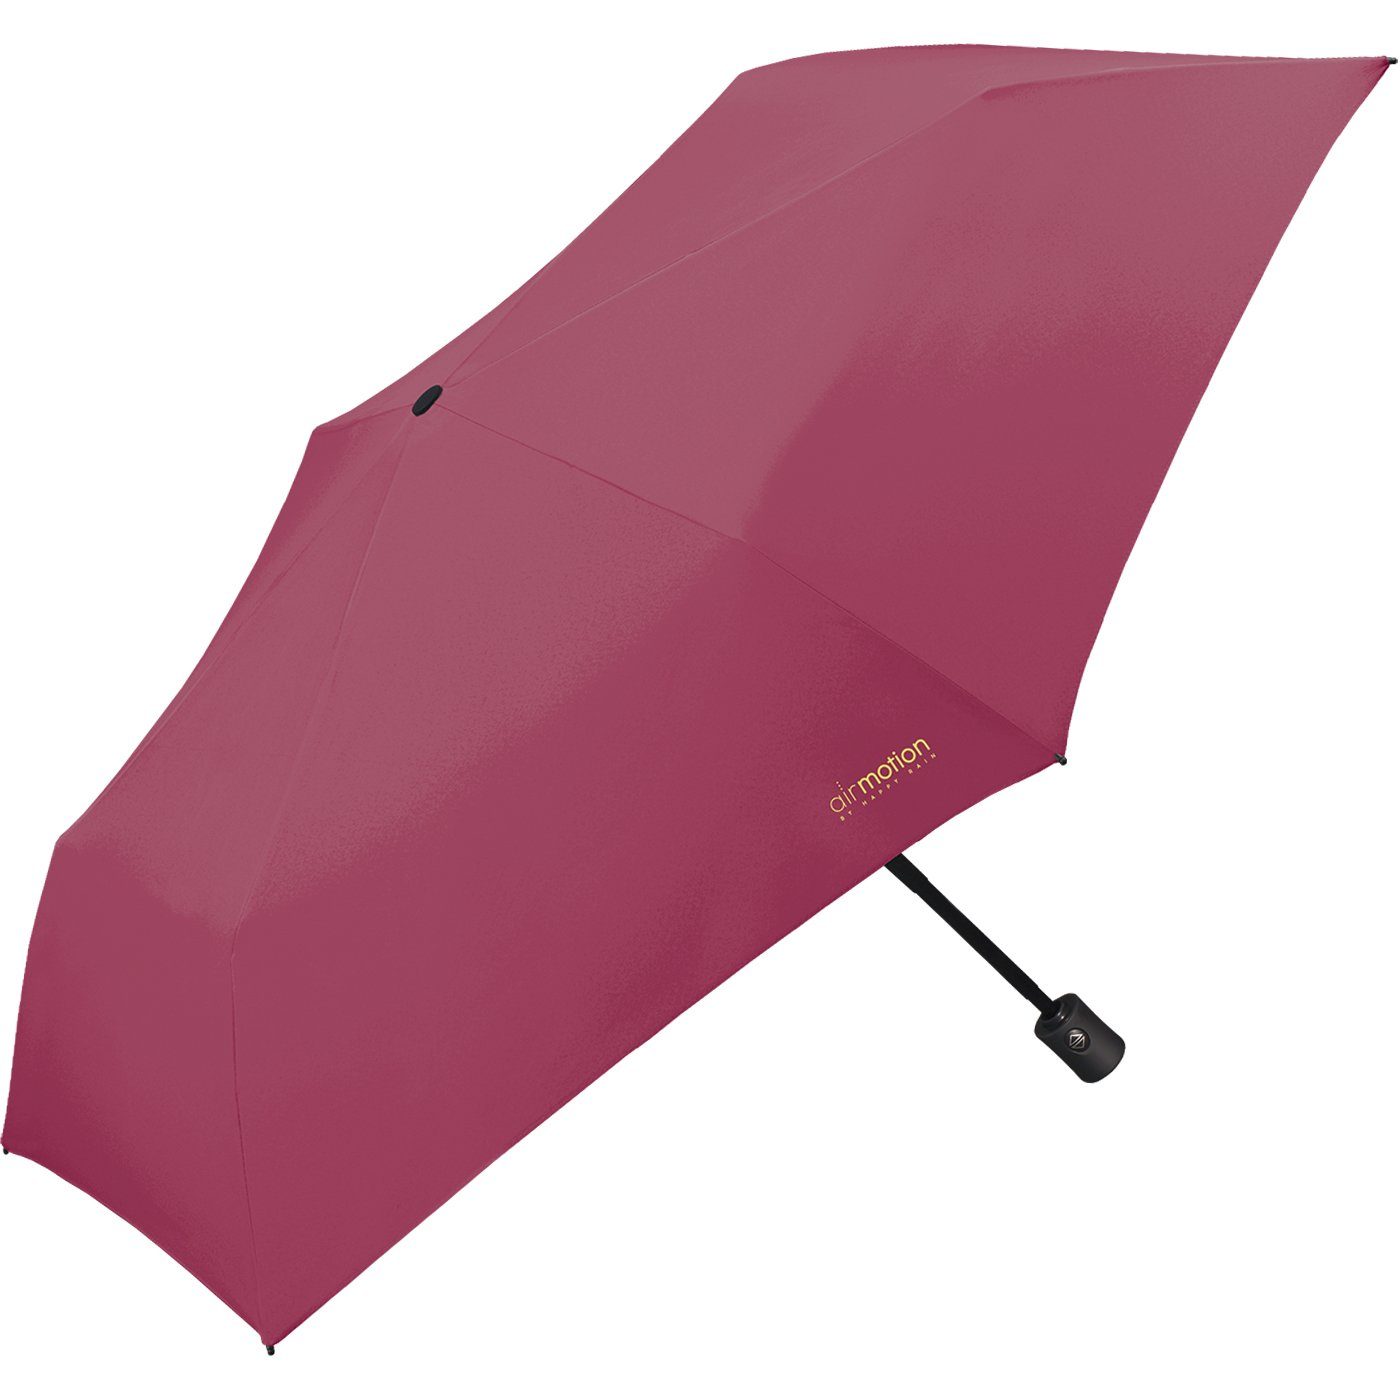 Motion g superleicht, - leichtester perfekt pink Taschenregenschirm Air Gepäck RAIN Handtasche 174 für Minischirm vollautomatischer Auf-Zu-Automatik - und HAPPY